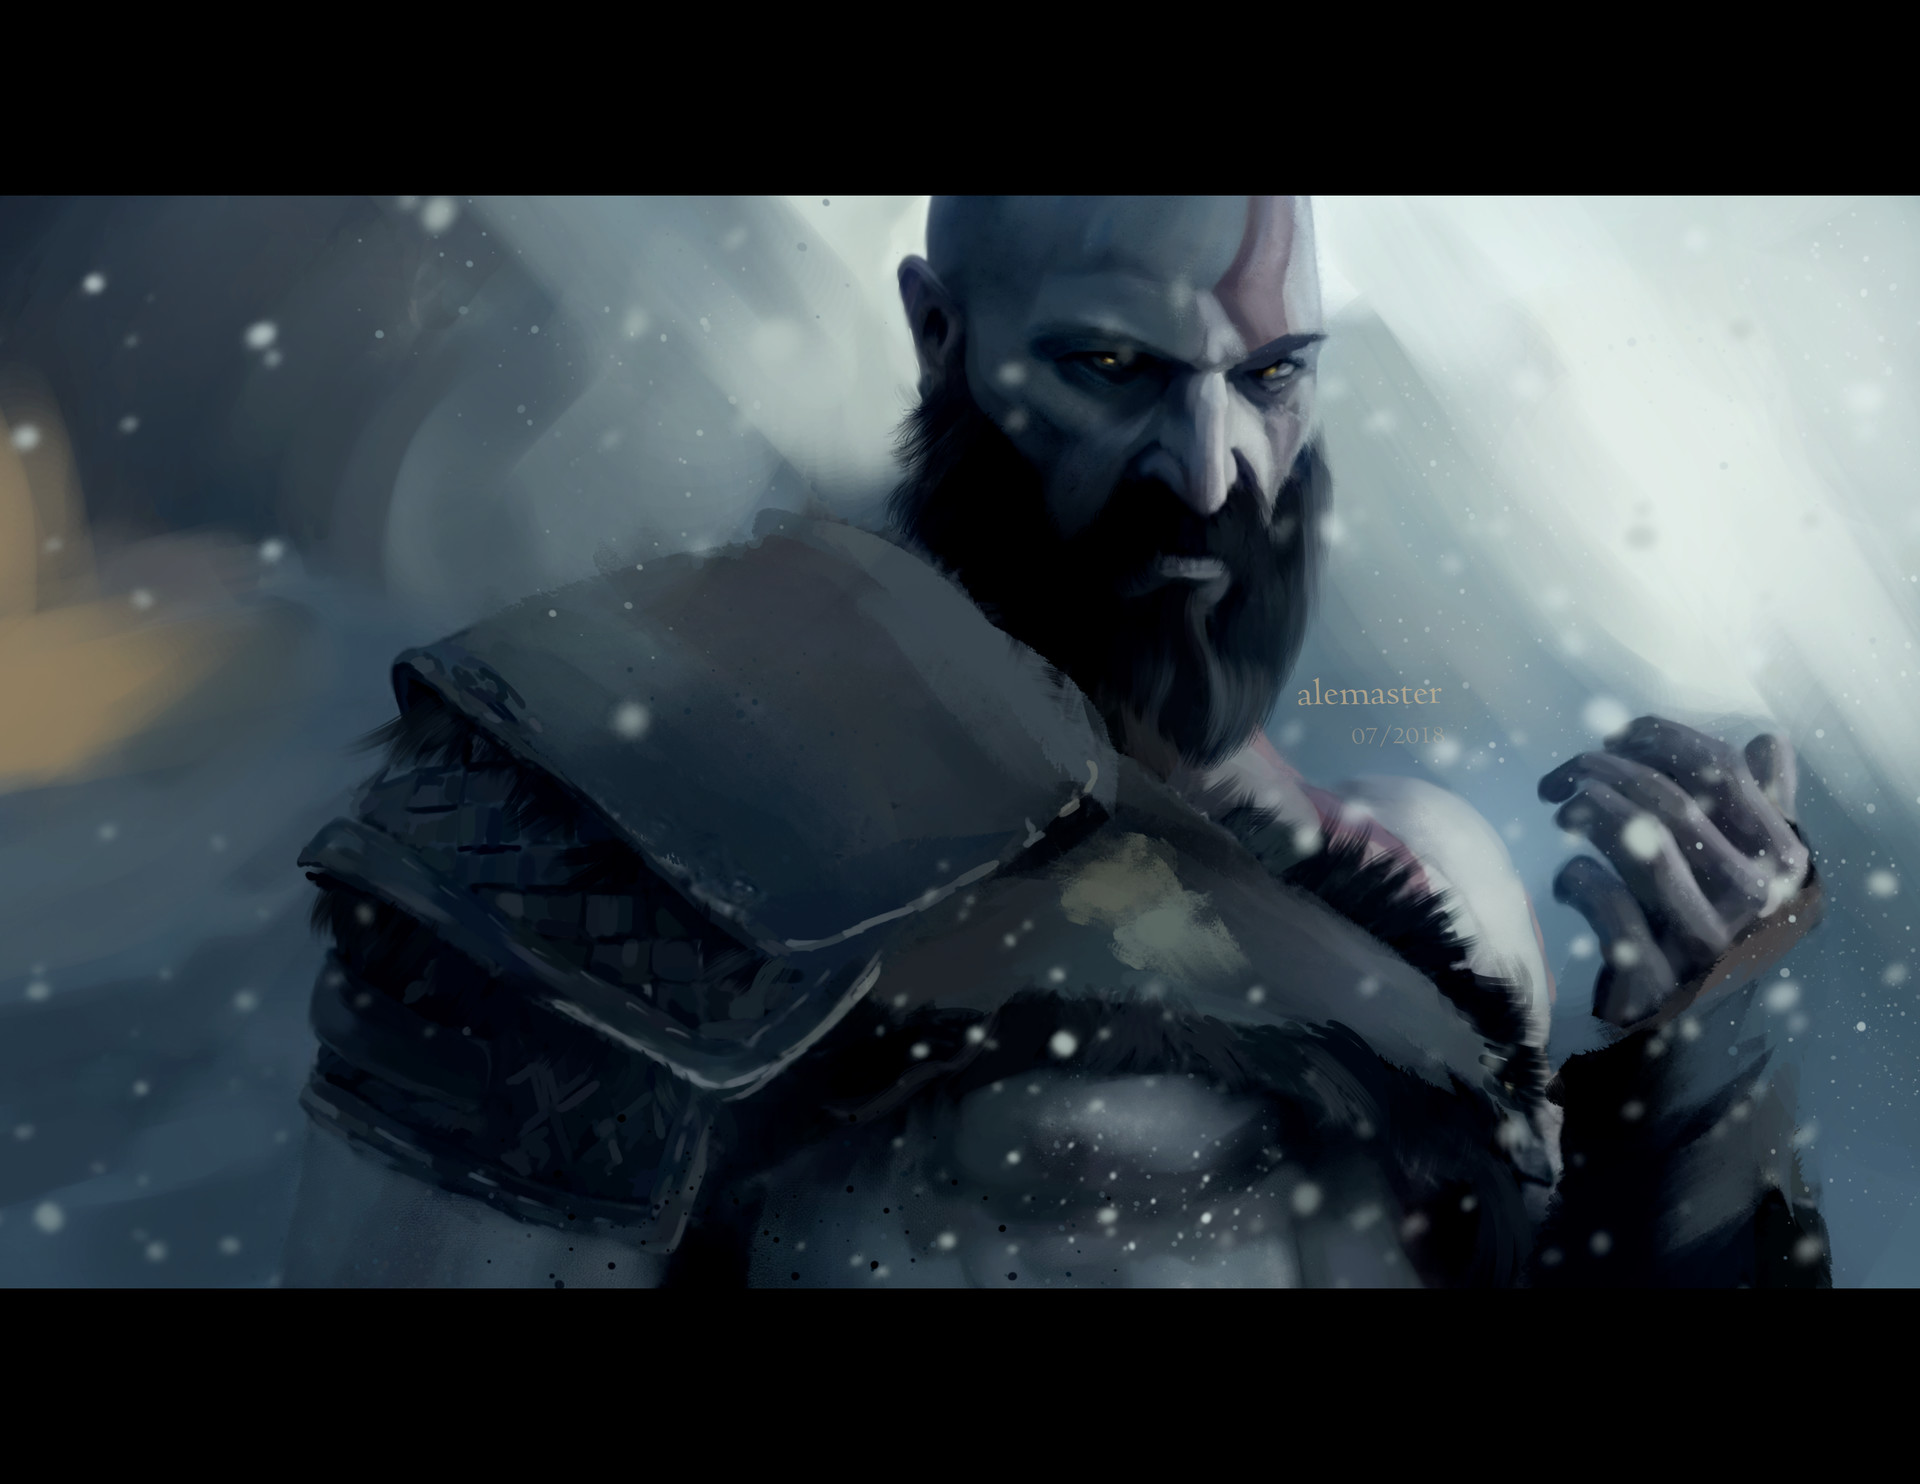 ArtStation - Kratos, Spartan Rage